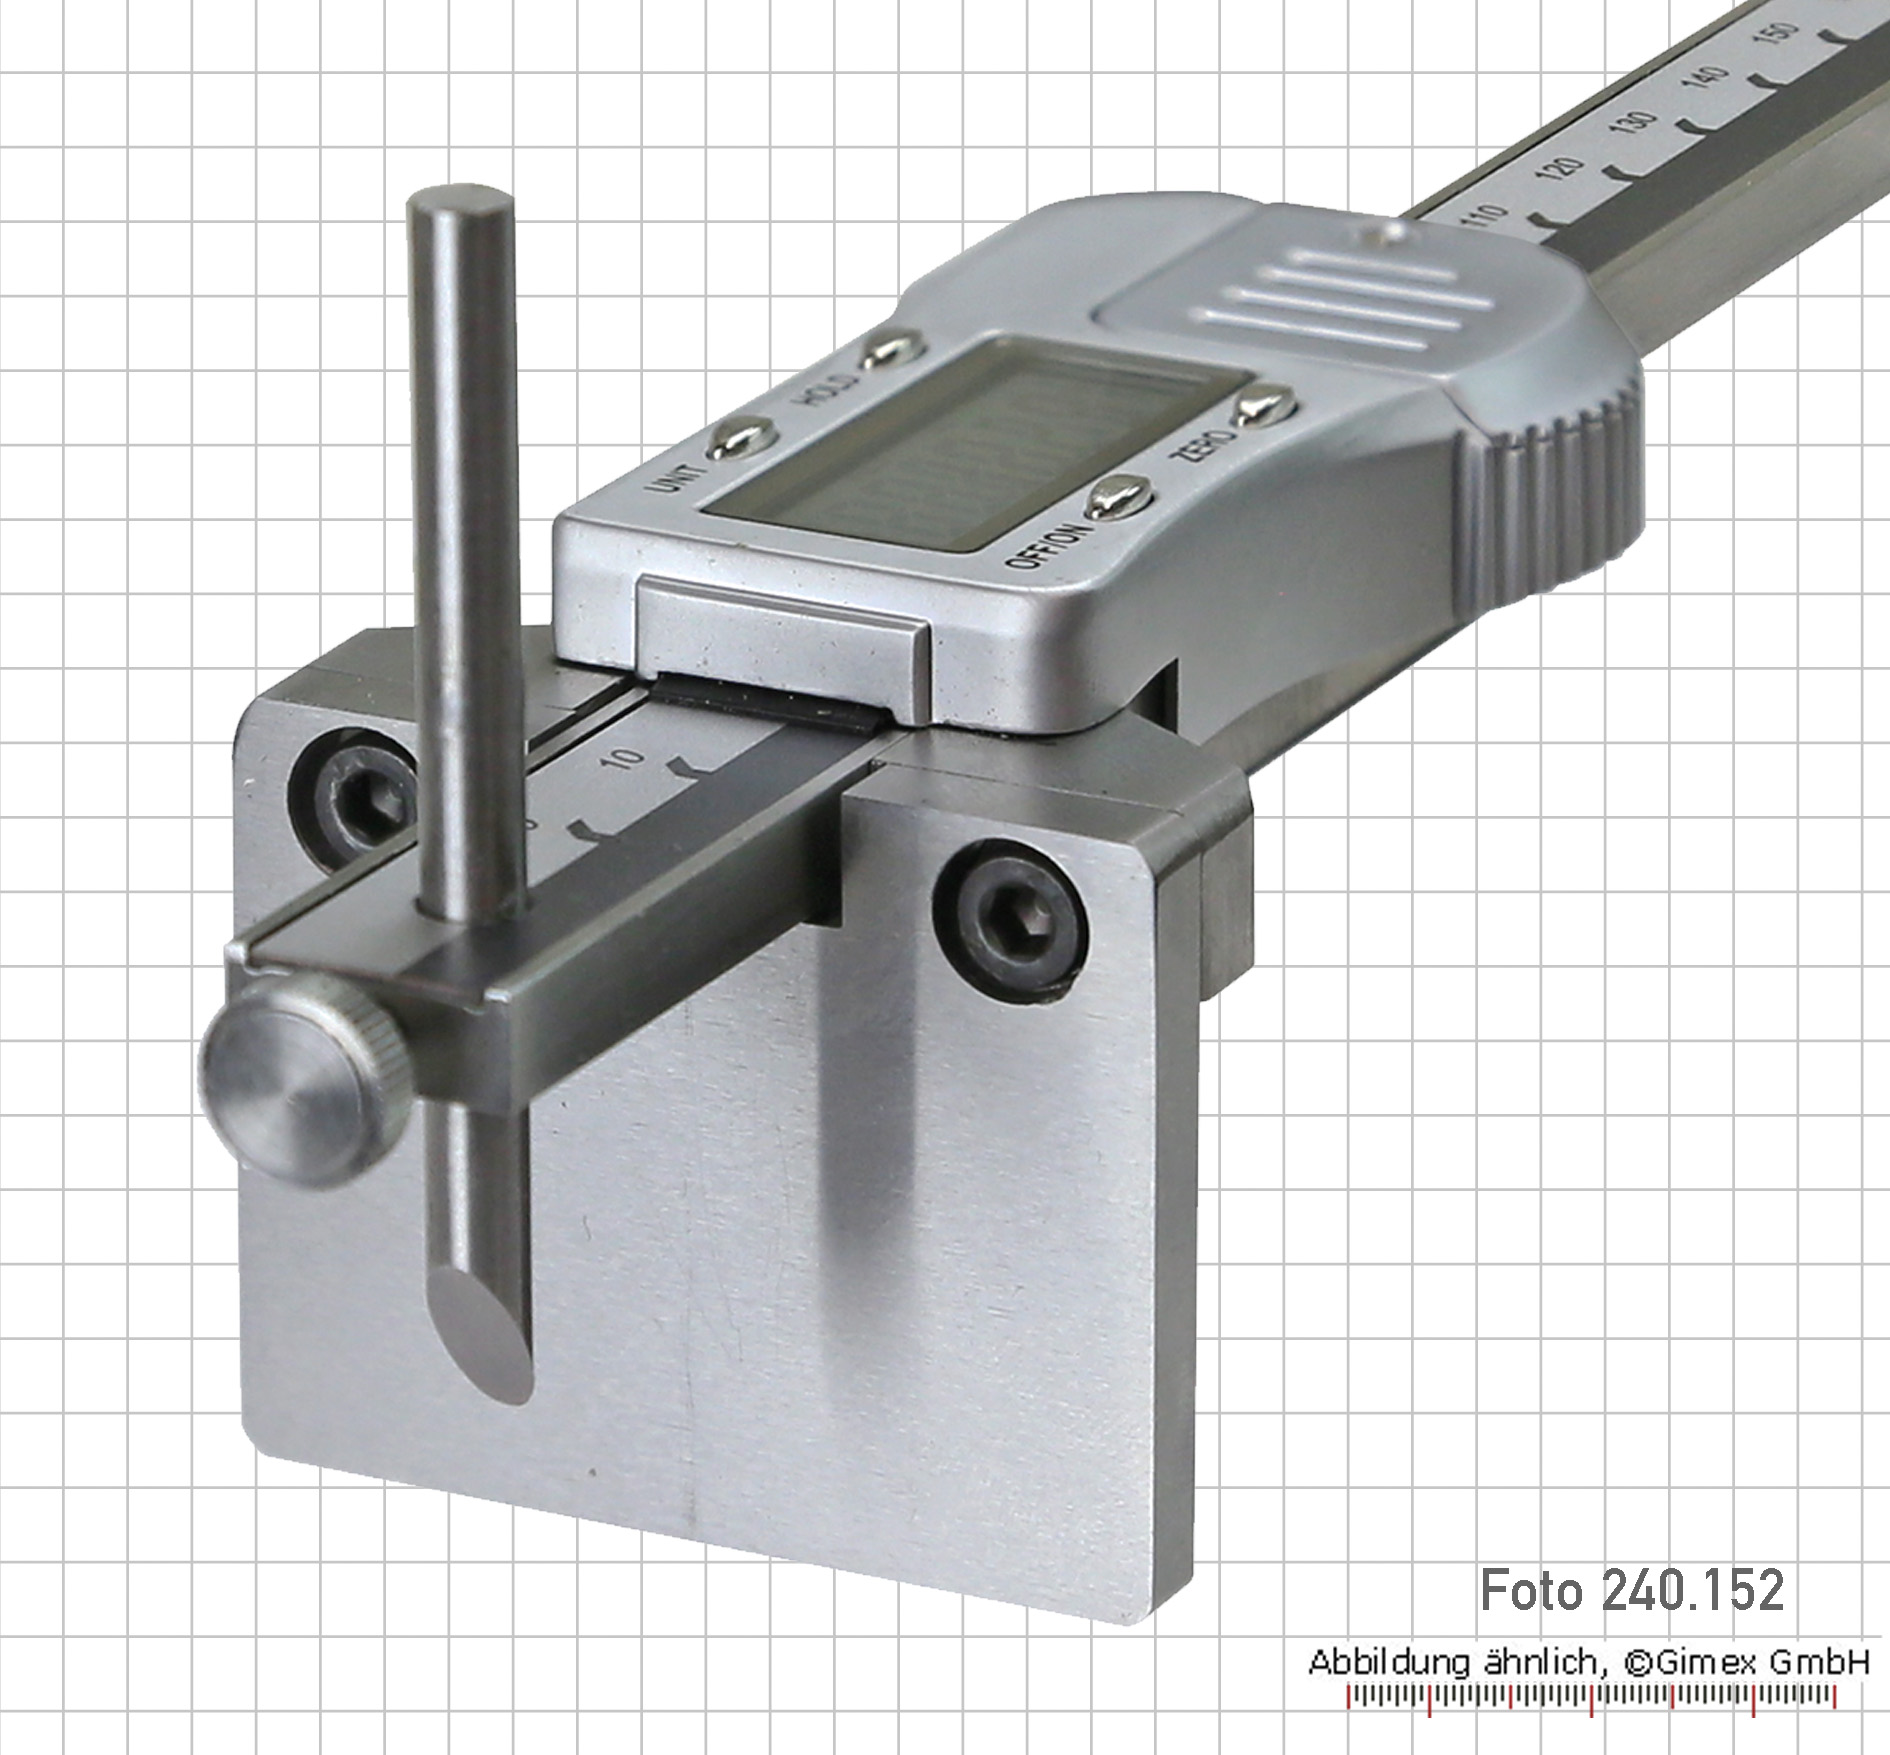 Messschieber 0-200mm 0,02mm Hohe präzision Metall Messschieber Gauge  Mikrometer Mess Werkzeuge Mit Retailbox Mehrere